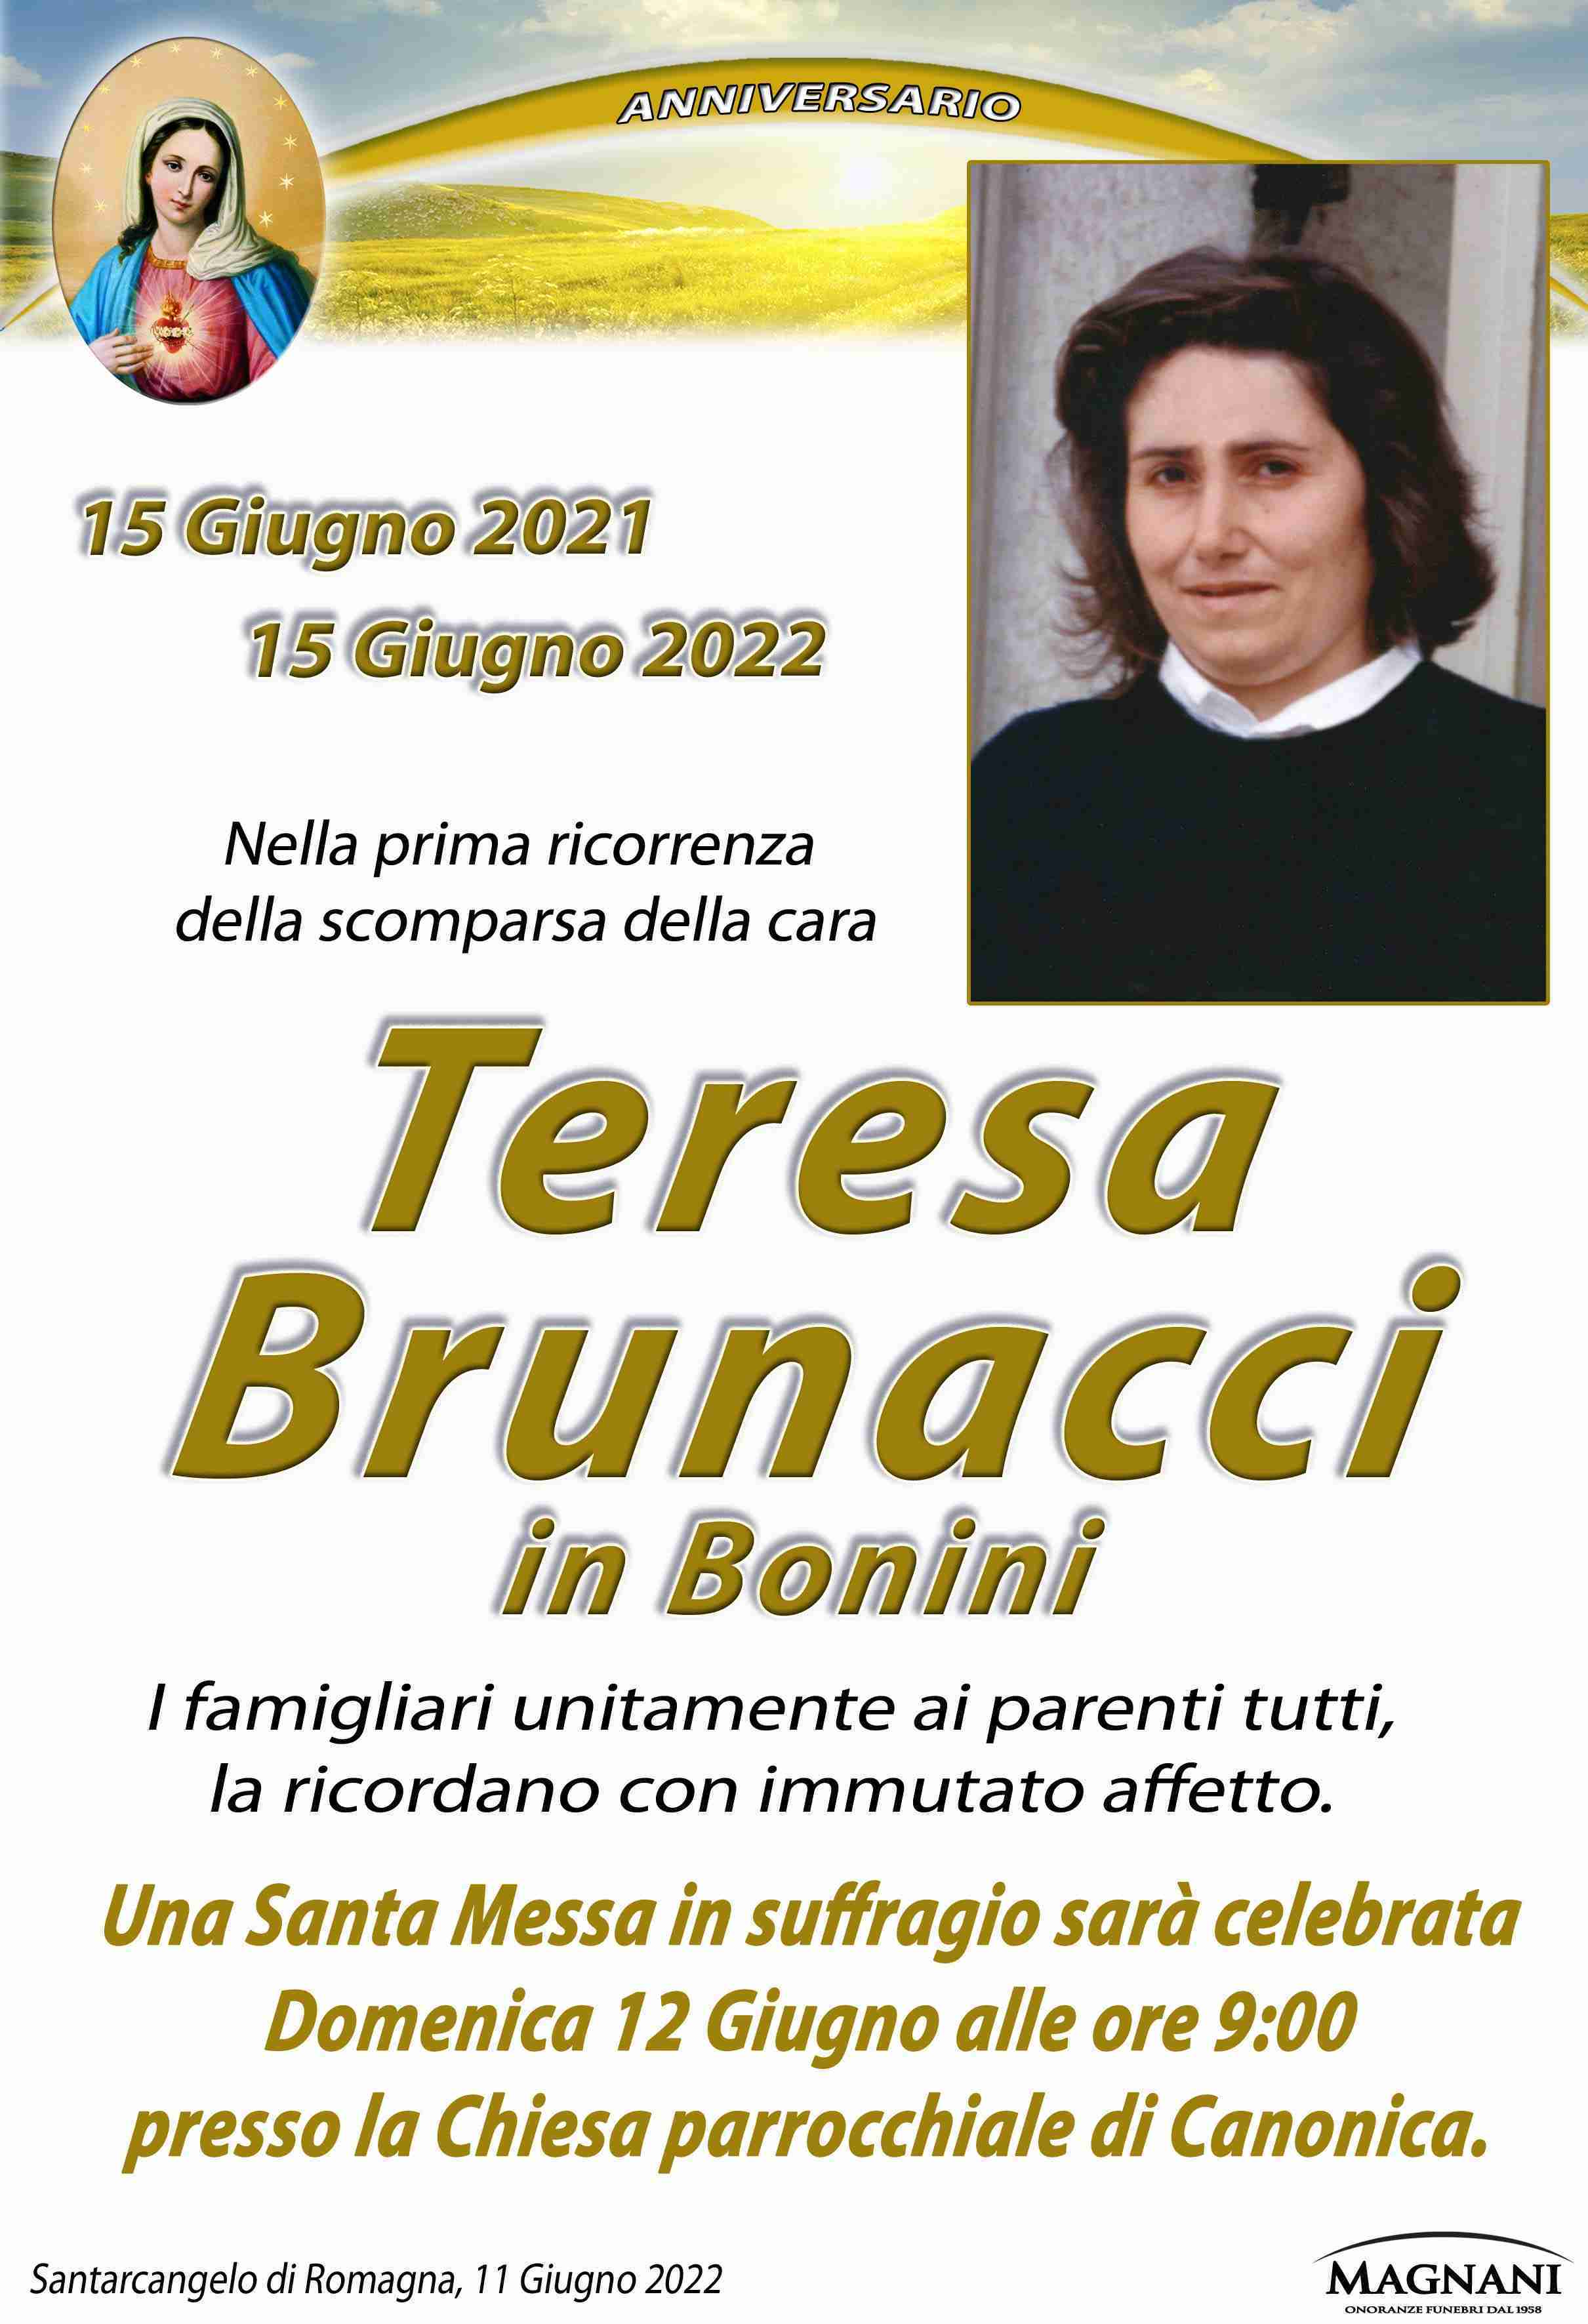 Teresa Brunacci